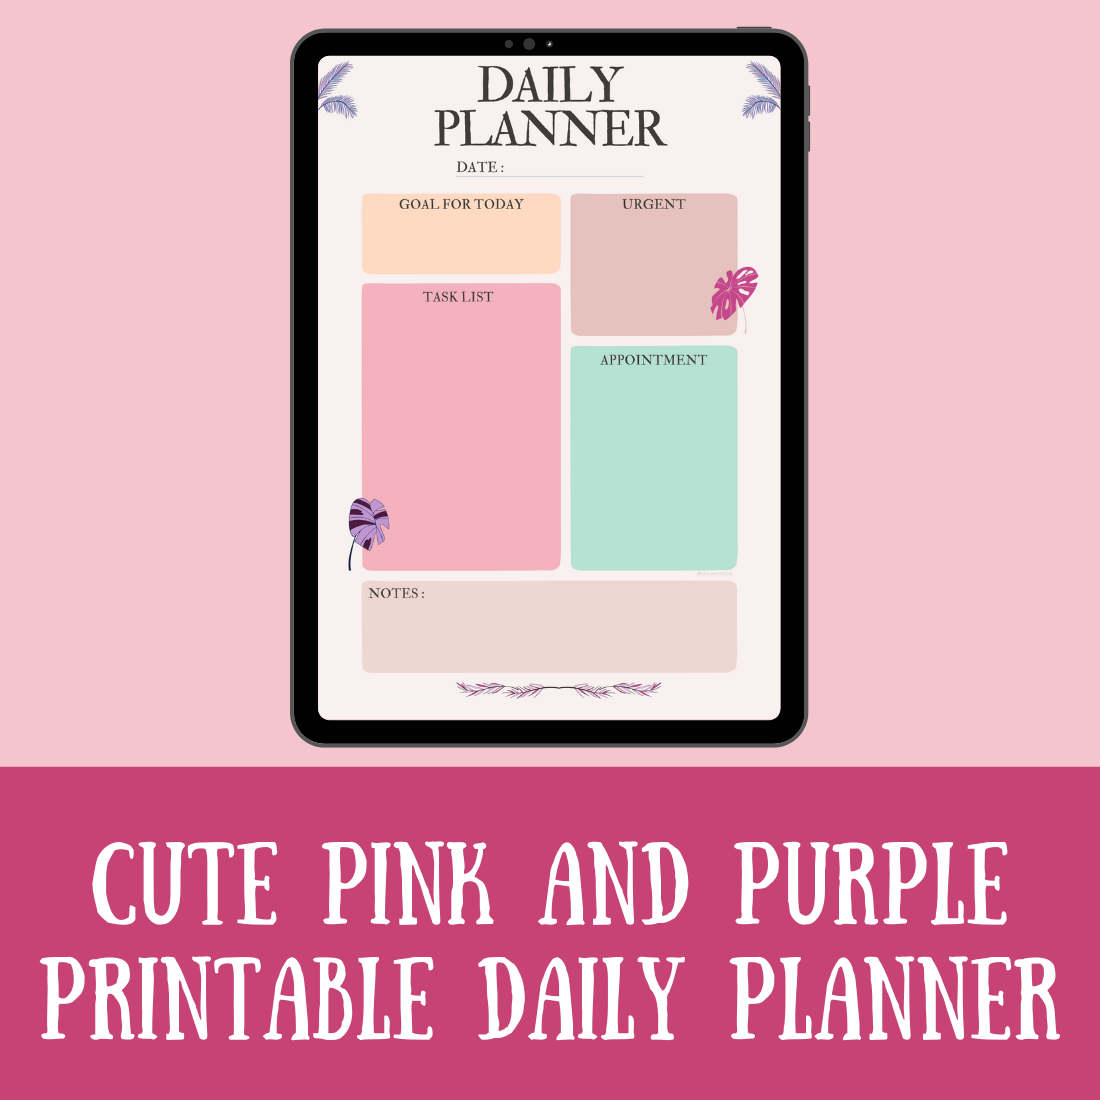 A Little Pink Planner